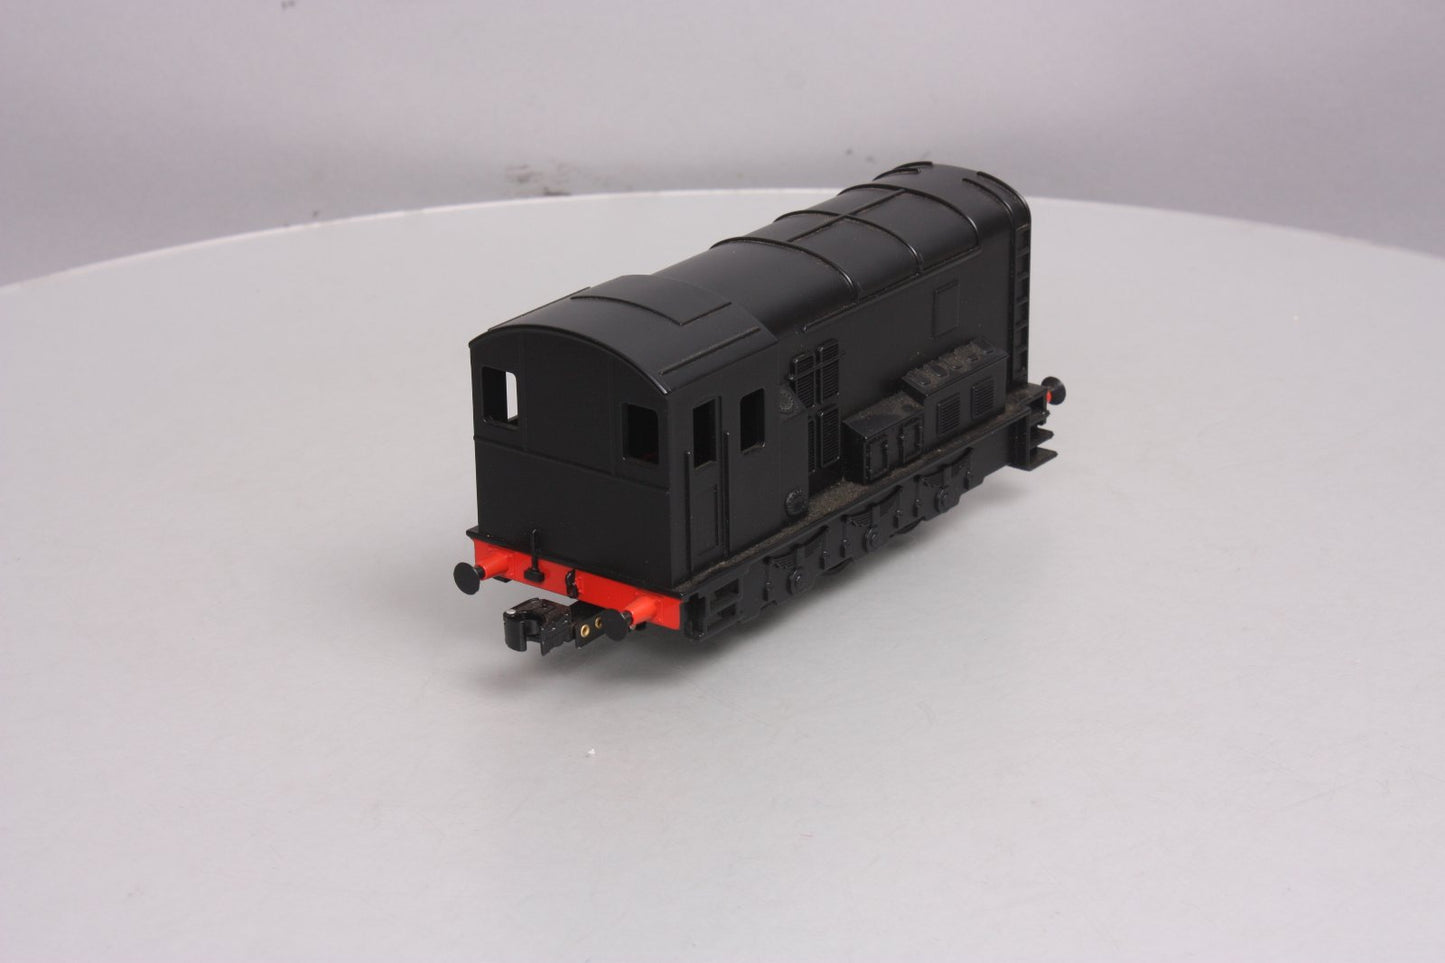 Lionel 6-28883 Thomas & Friends "Diesel" Engine